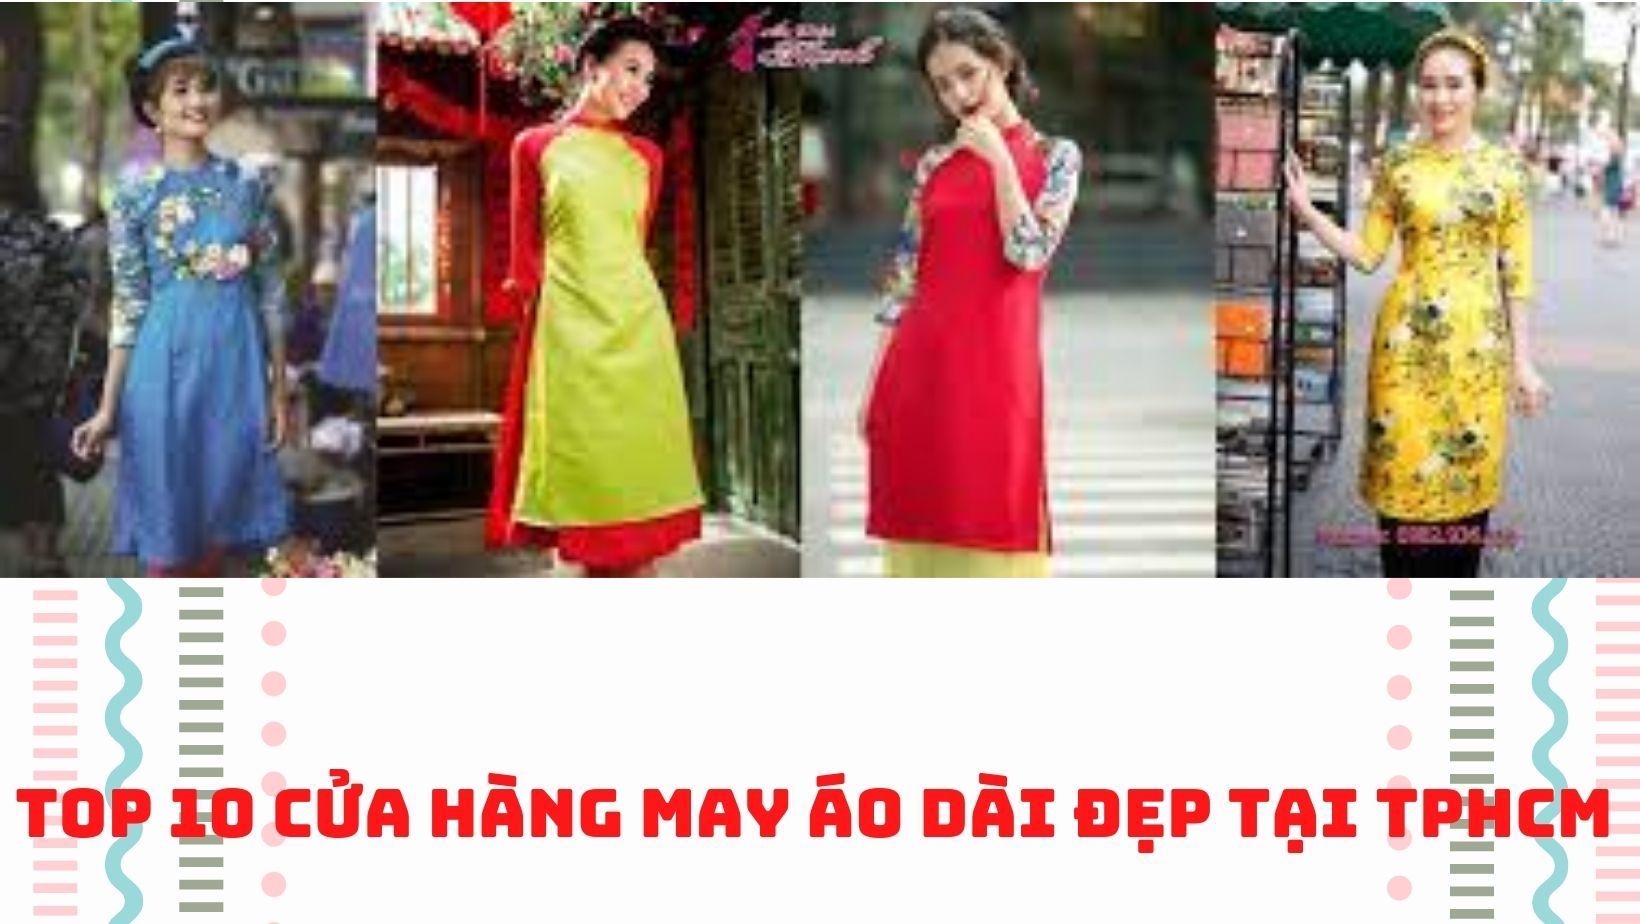 Top 10 cửa hàng may áo dài đẹp tại TPHCM - Top10hcm.vn